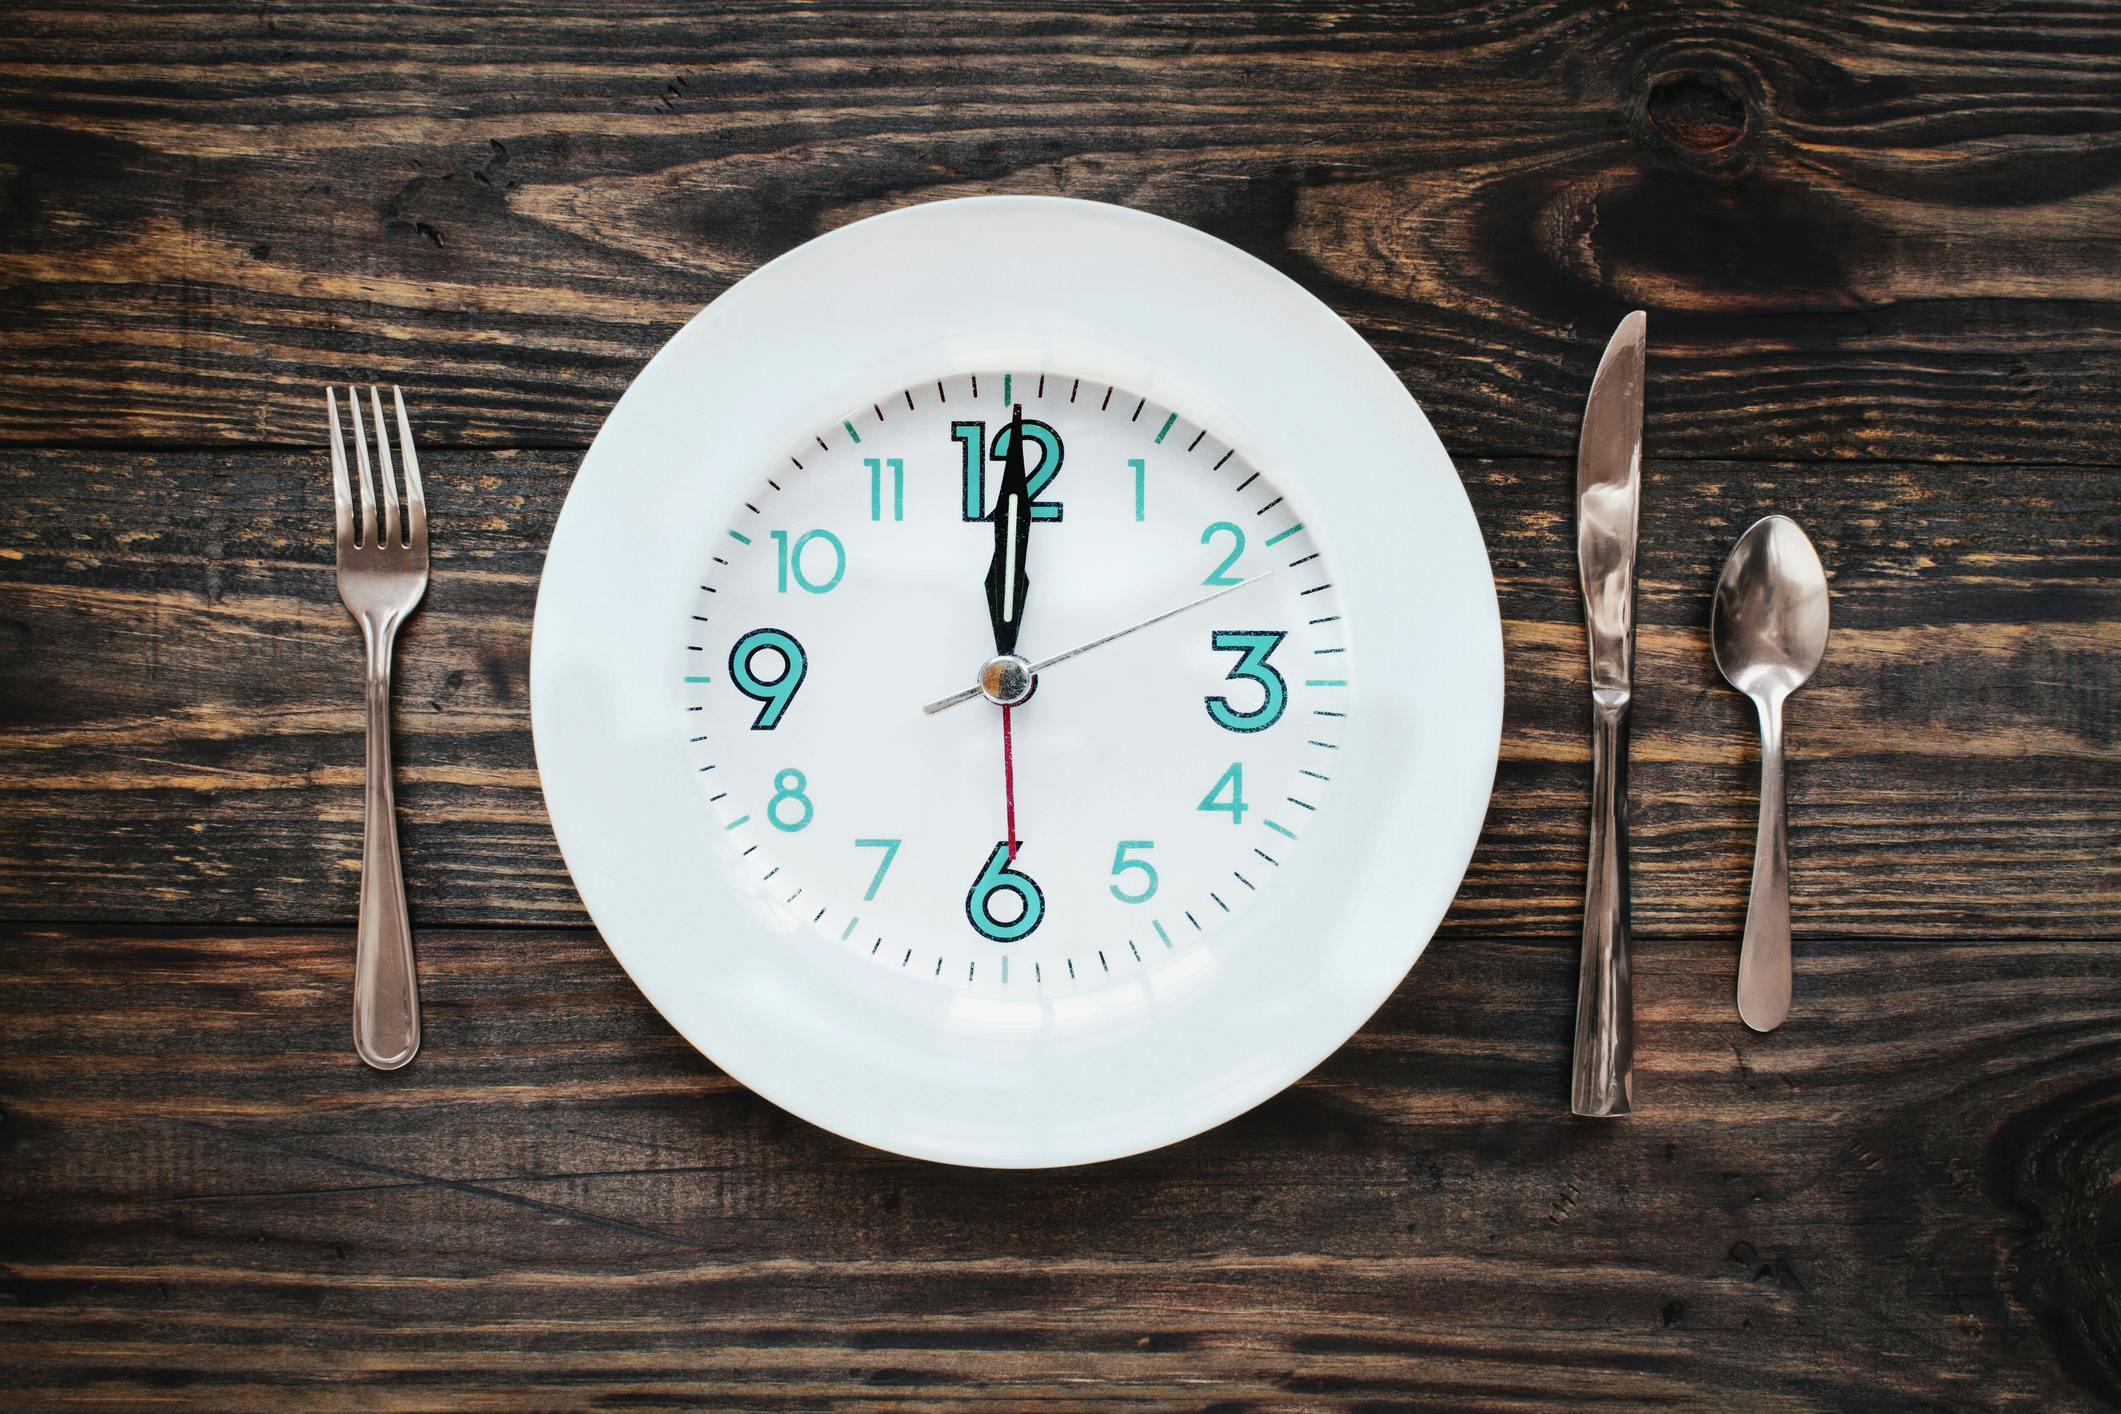 16:8 diéta – 8 óra evés, 16 óra pihenés